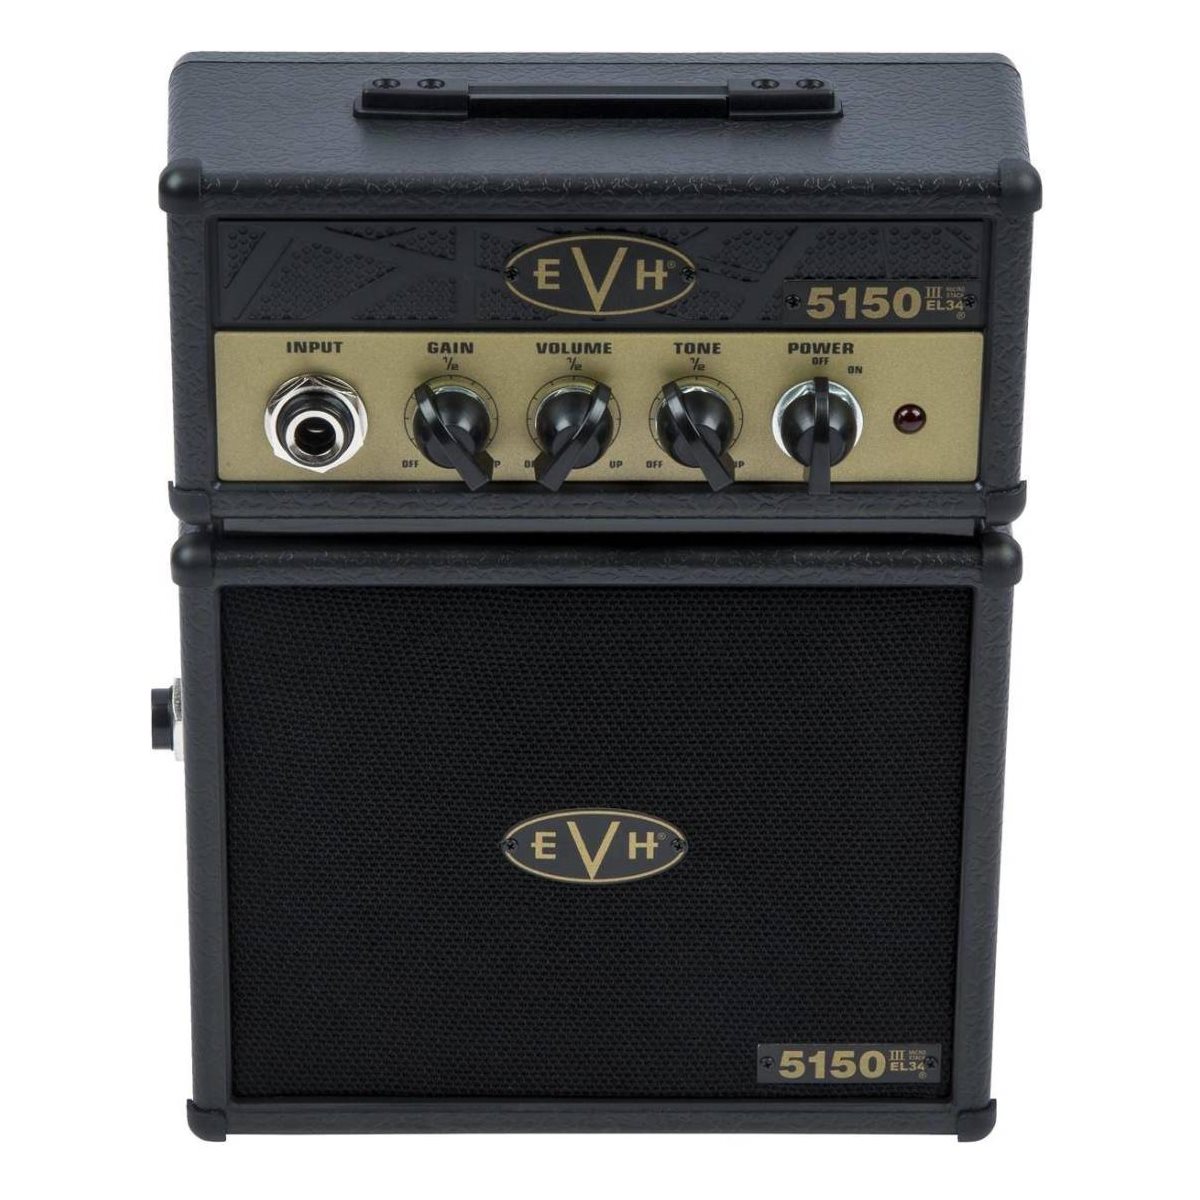 EVH - 5150 III EL34 Micro Stack